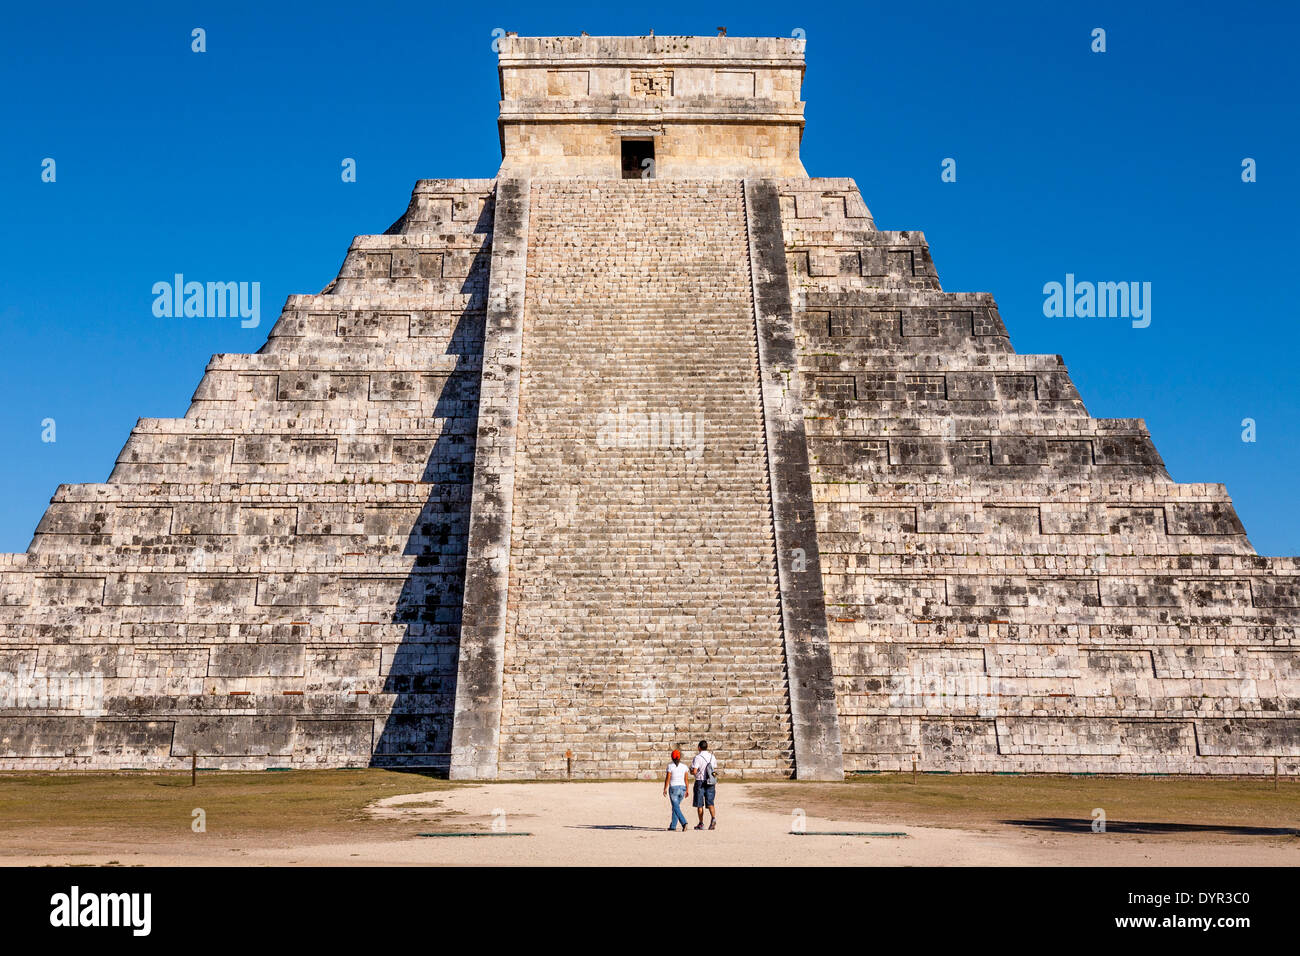 El Castillo, Chichen Itza sito archeologico, Yucatan, Messico Foto Stock